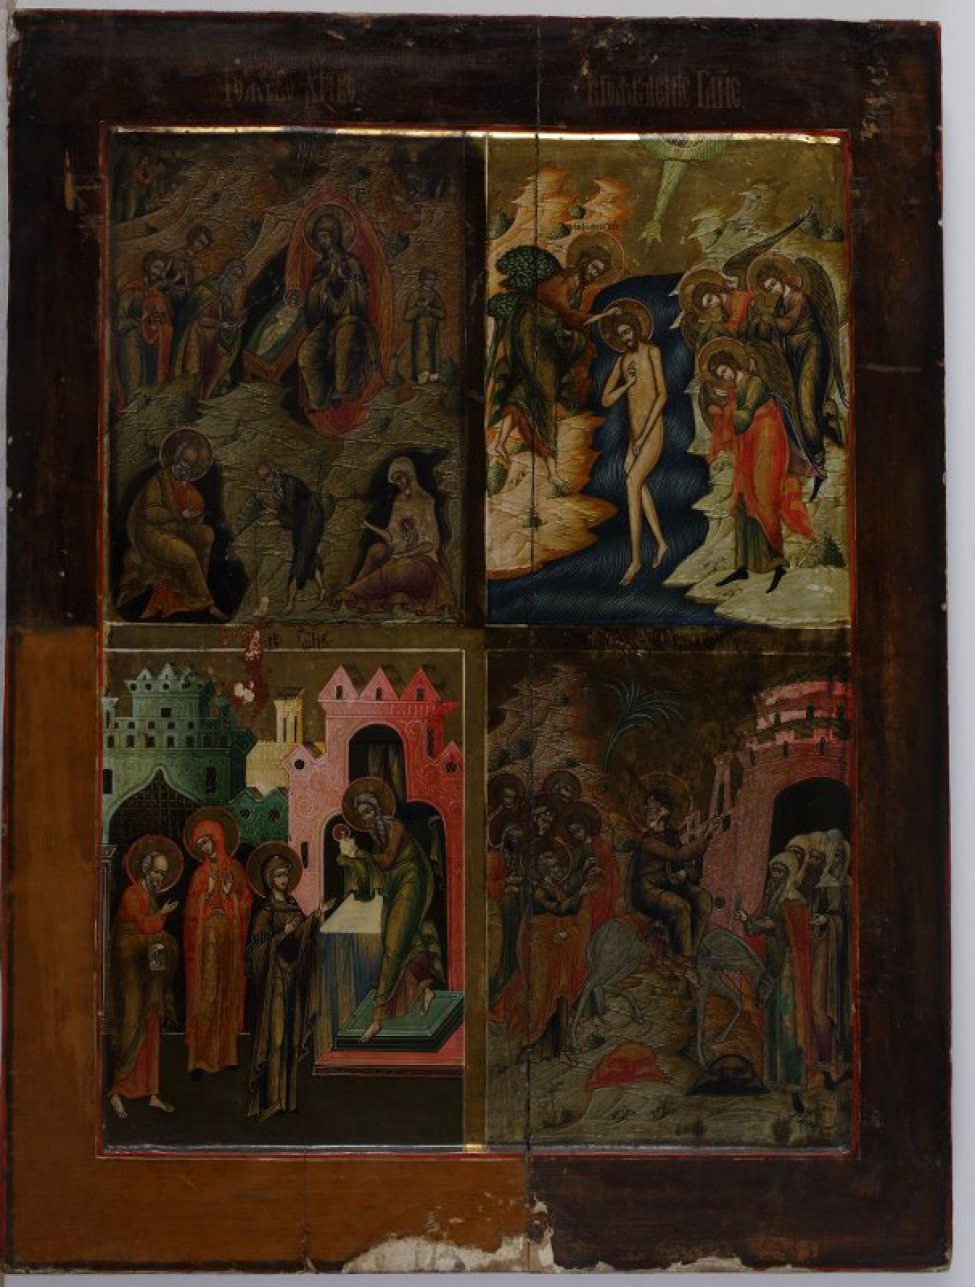 Доска: доска из 2-х частей, с ковчегом, с двумя врезными встречными шпонками.
В среднике расположены 4 клейма, разделенные в центре золотой полосой: 1-"Рождество Христово". На фоне горок в верхней части клейма изображена сцена поклонения волхвов, в нижней - сидящие на фоне пещер слева - Иосиф, справа -женщина с младенцем Христом на коленях, между ними - старец с посохом. 2-"Богоявление" - на фоне синего потока изображен в рост обнаженный Христос, в развороте к стоящему на левом берегу Иоанну Предтечи. На правом берегу - три склоненных в поклоне ангела. В центре вверху, исходящий из сегмента луч. 3 -"Сретение" - на фоне архитектуры на темном поземе изображены: справа на двухступенчатом подножии св. Симеон, держащий на покровенных руках младенца Христа. Перед ним Богоматерь, за ней св. Анна и Иосиф. 4-"Вход в Иерусалим" -в центре на белом осле восседает Христос. Правой рукой он благословляет выходящих из ворот старцев. Голова Христа повернута к идущим за ним апостолам. Фон в клеймах и нимбы золотые. Поля - светло-коричневые, опушь двойная красно-коричневая.